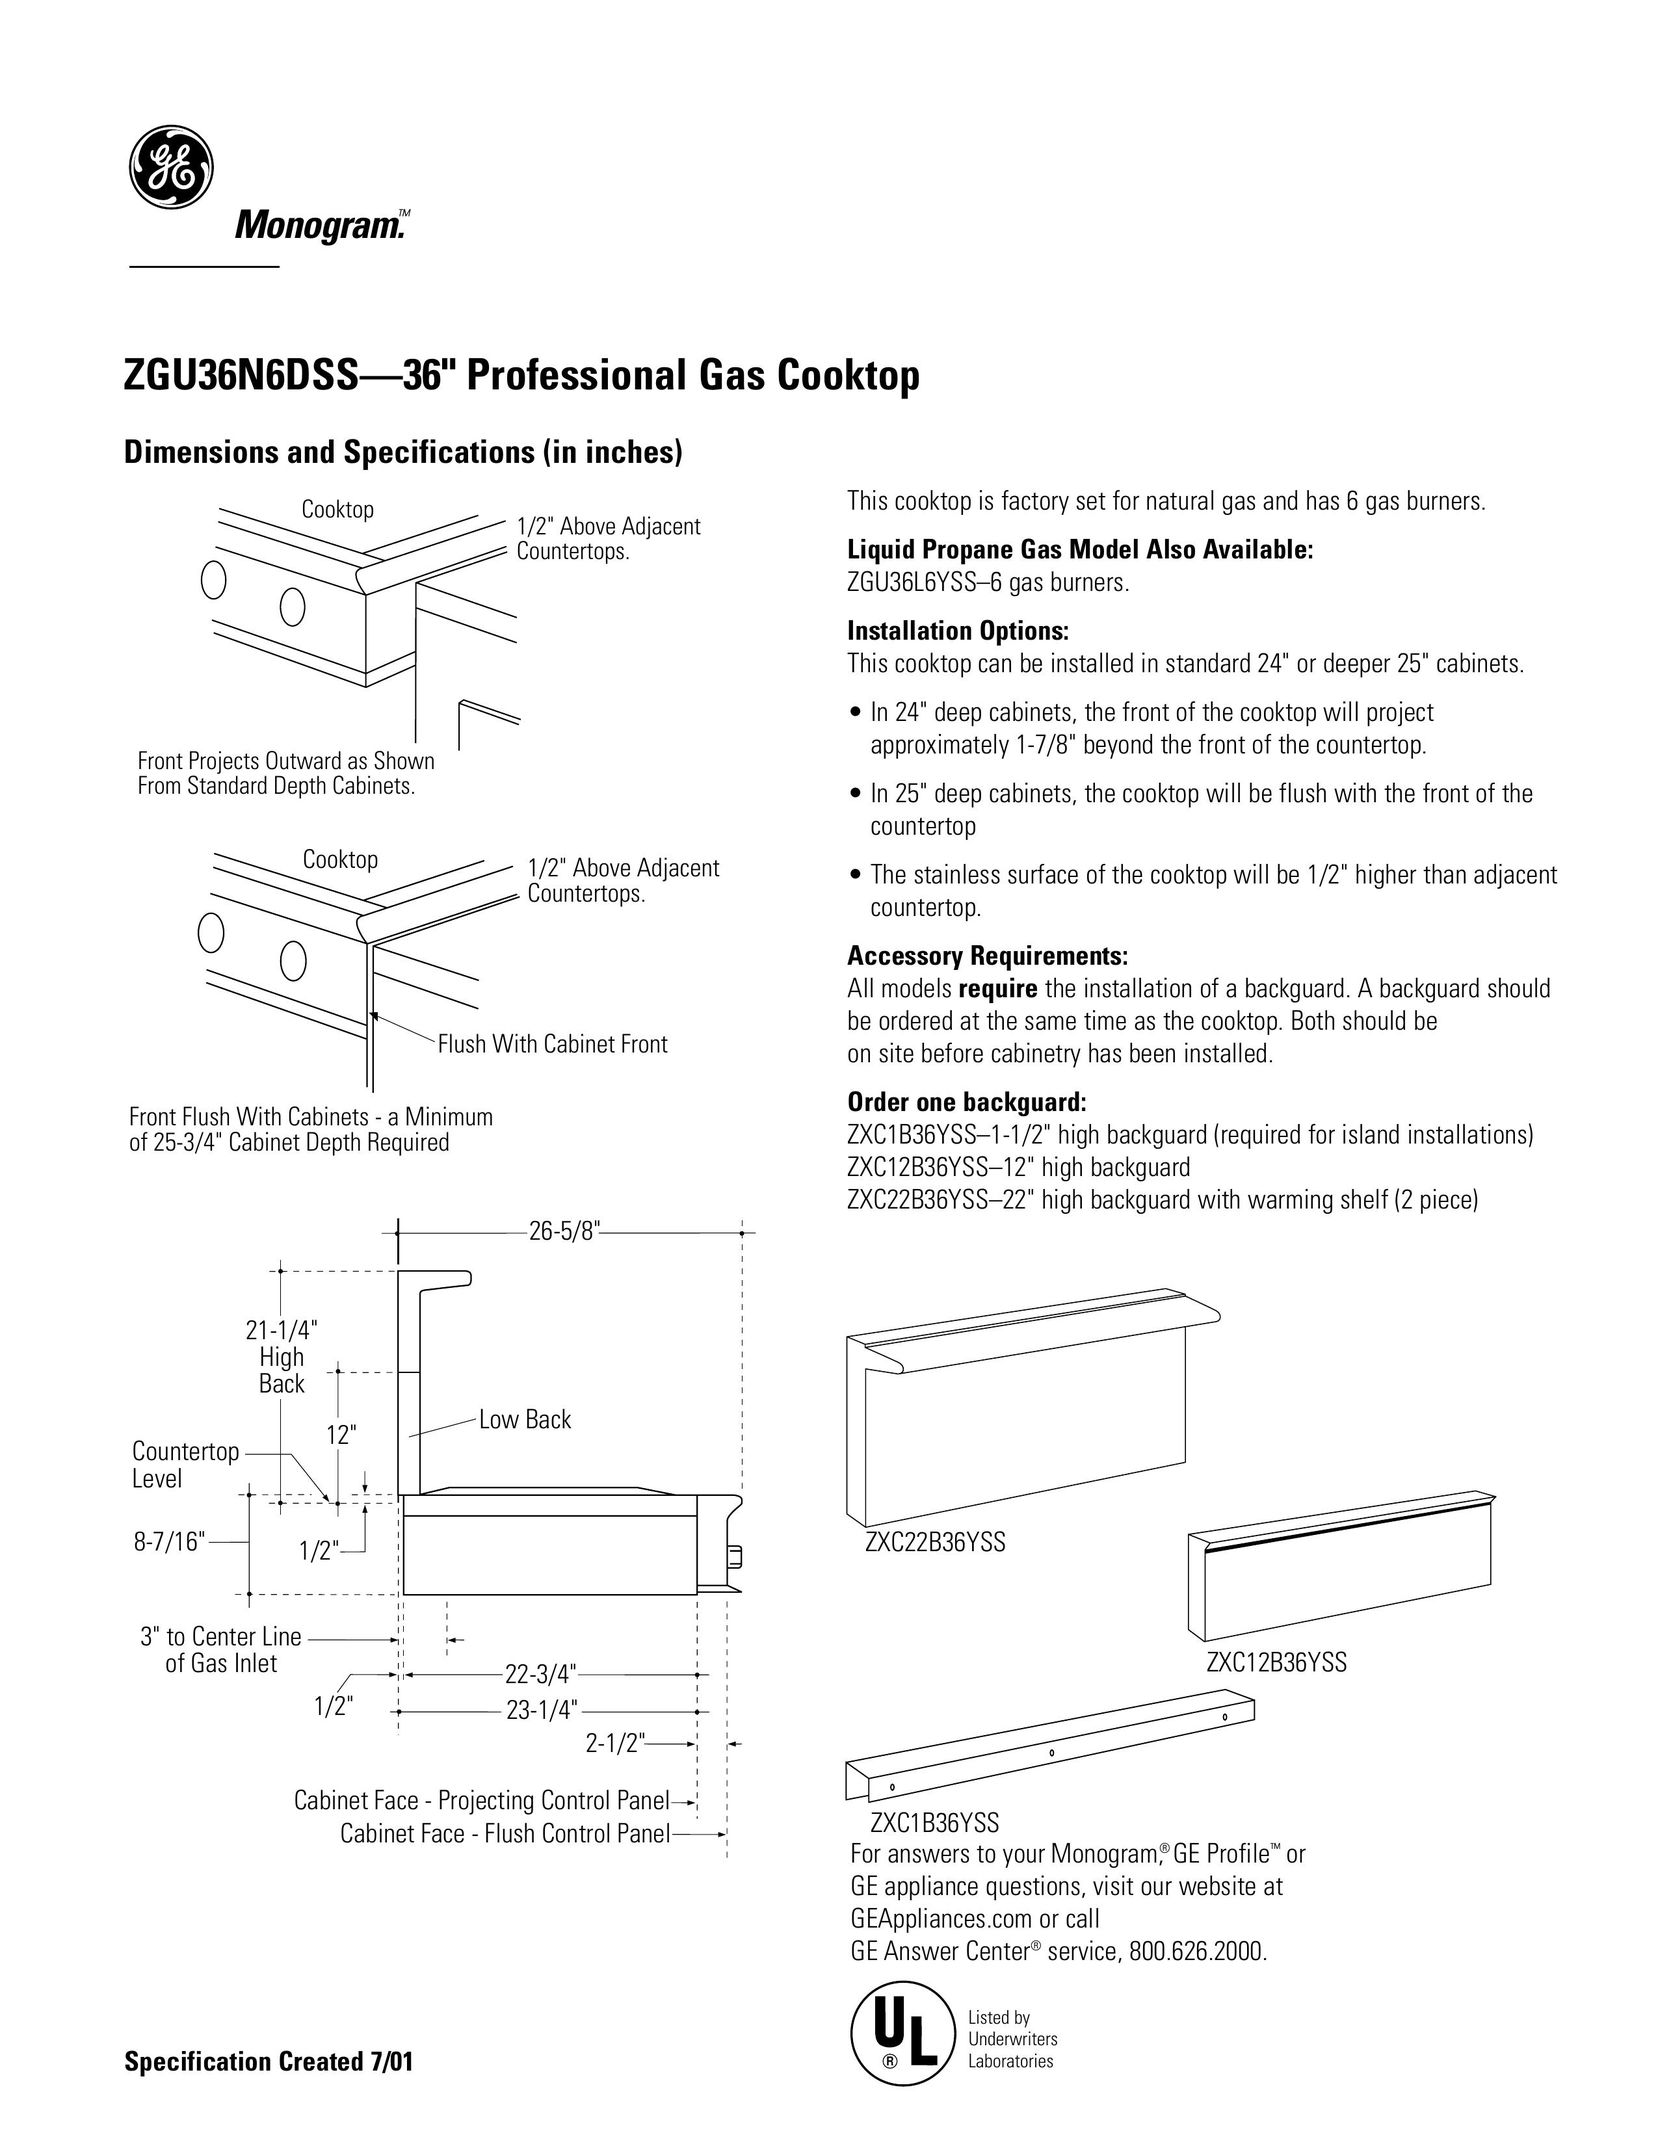 GE Monogram ZGU36N6DSS Oven User Manual